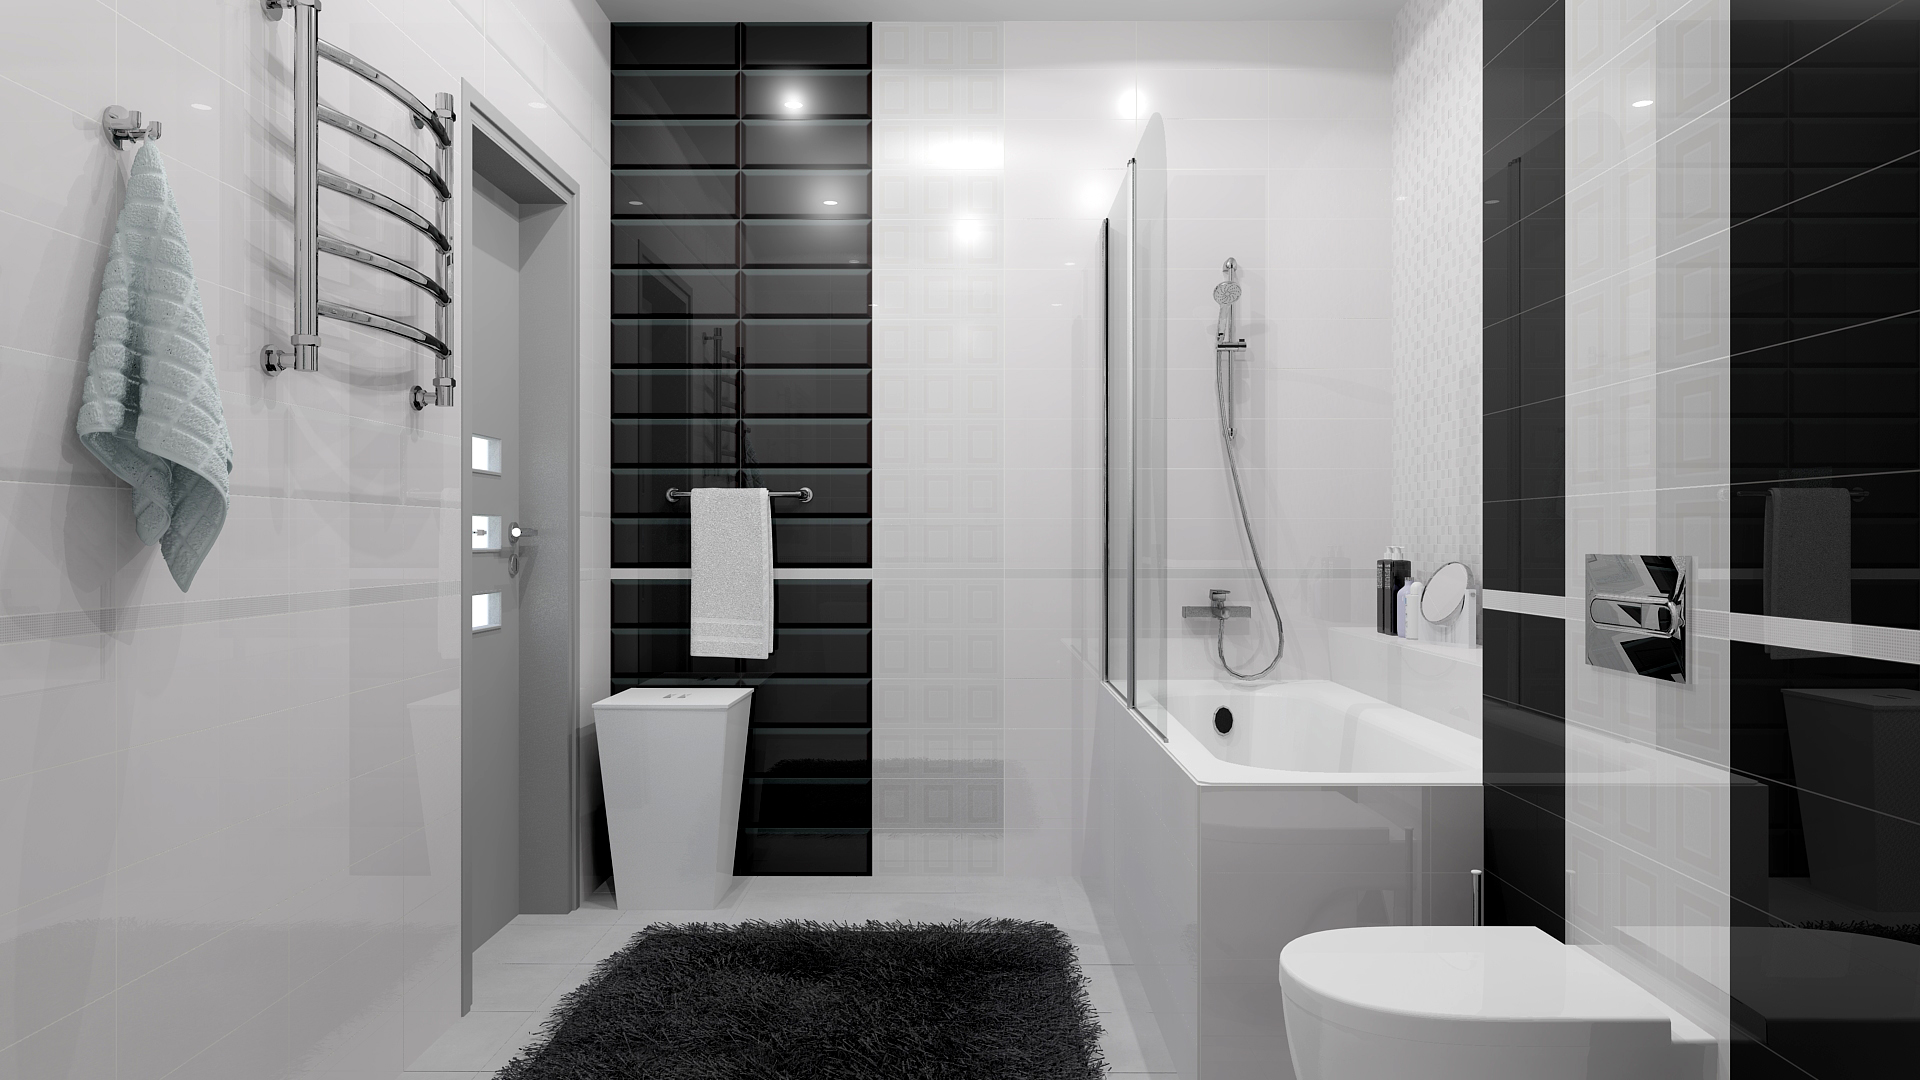  ванная комната: рекомендации | T.H.E. Capital